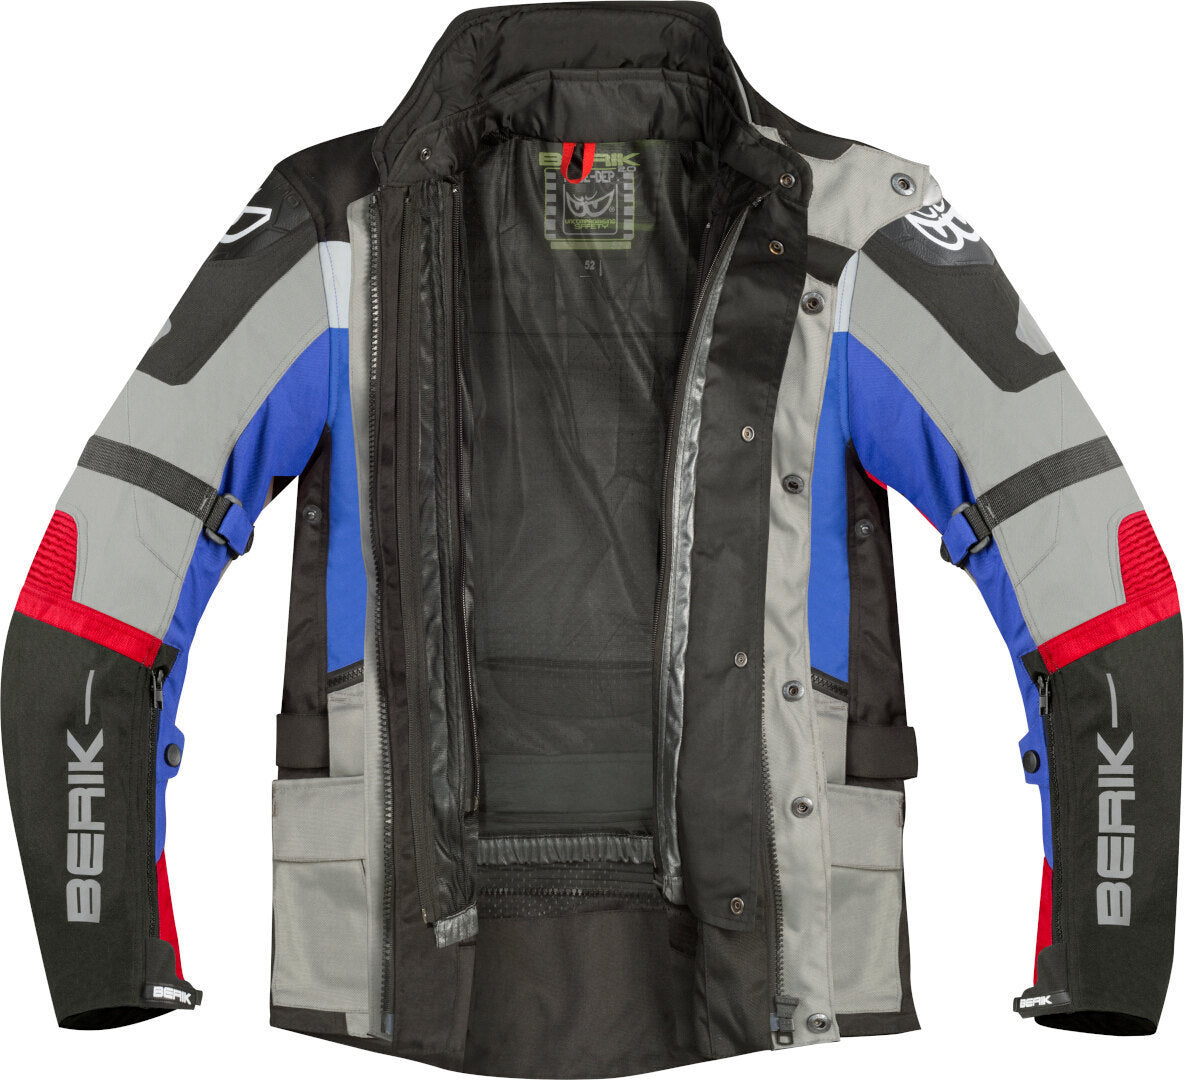 Berik Dakota Waterproof 3in1 Motorcycle Textile Jacket#color_black-grey-blue